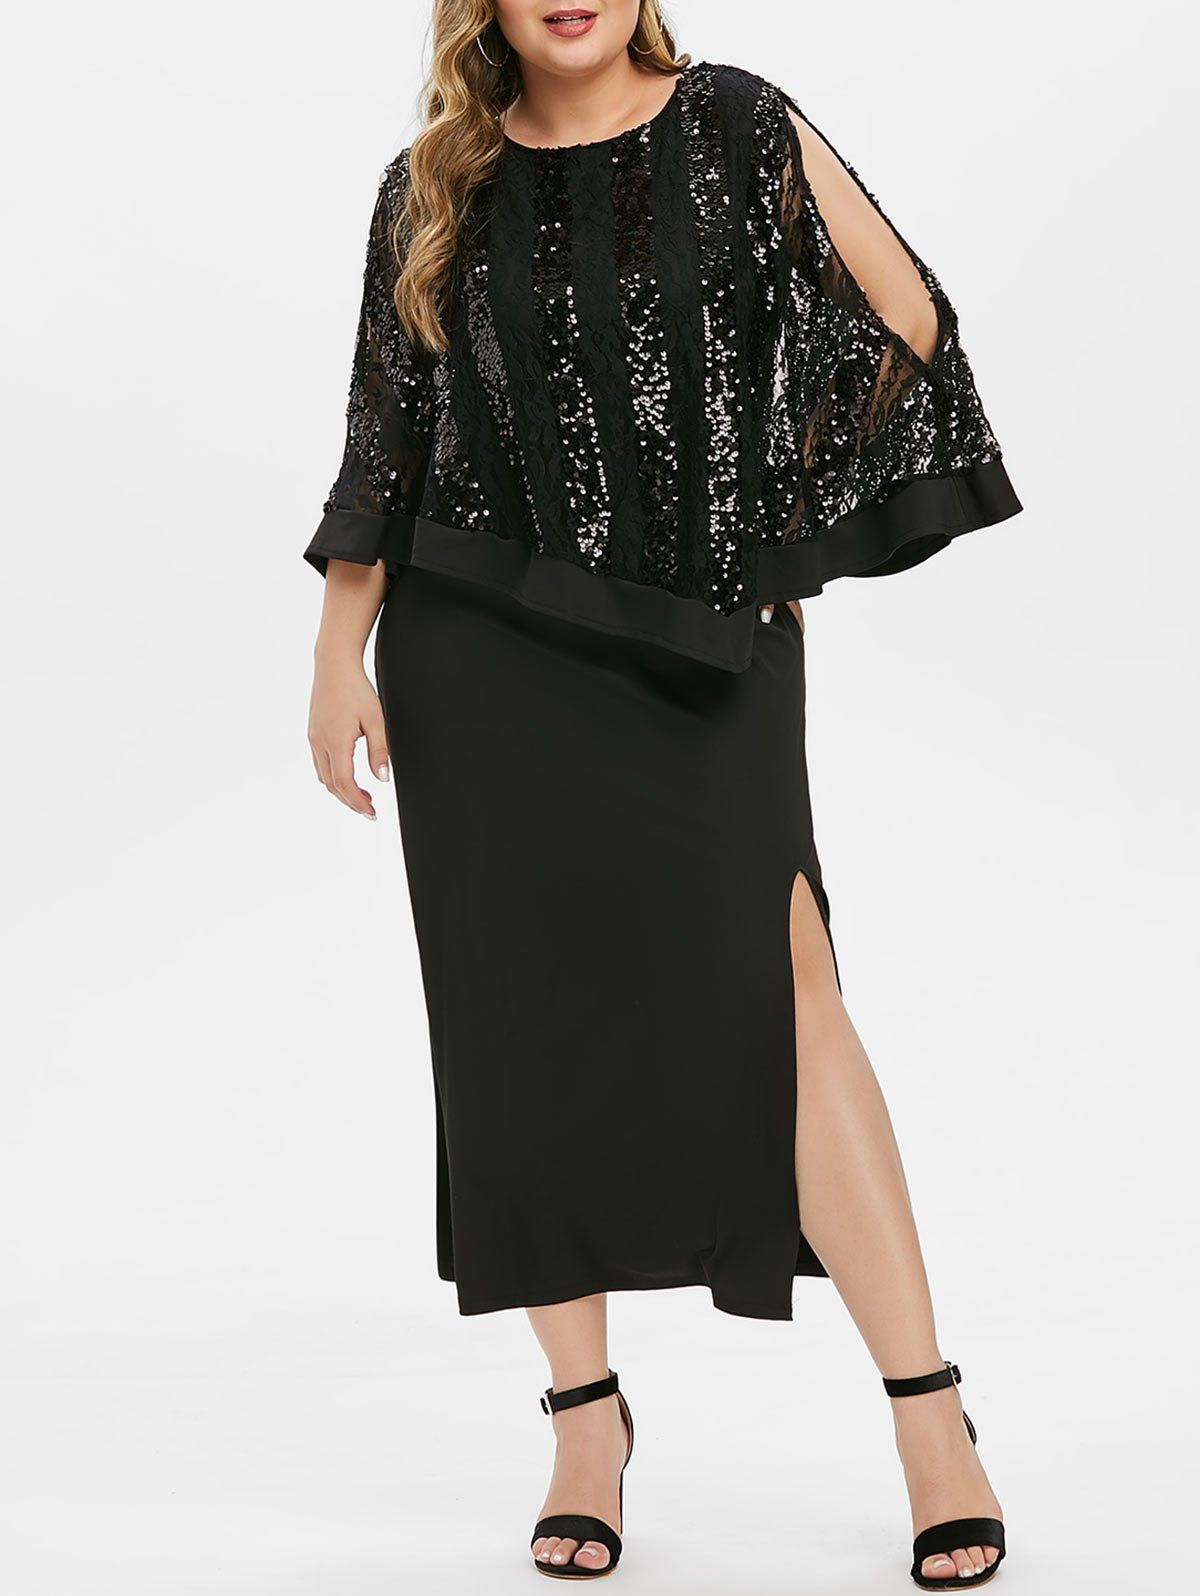 Plus Size Sequins High Slit Cape Party Dress - BLACK 4X